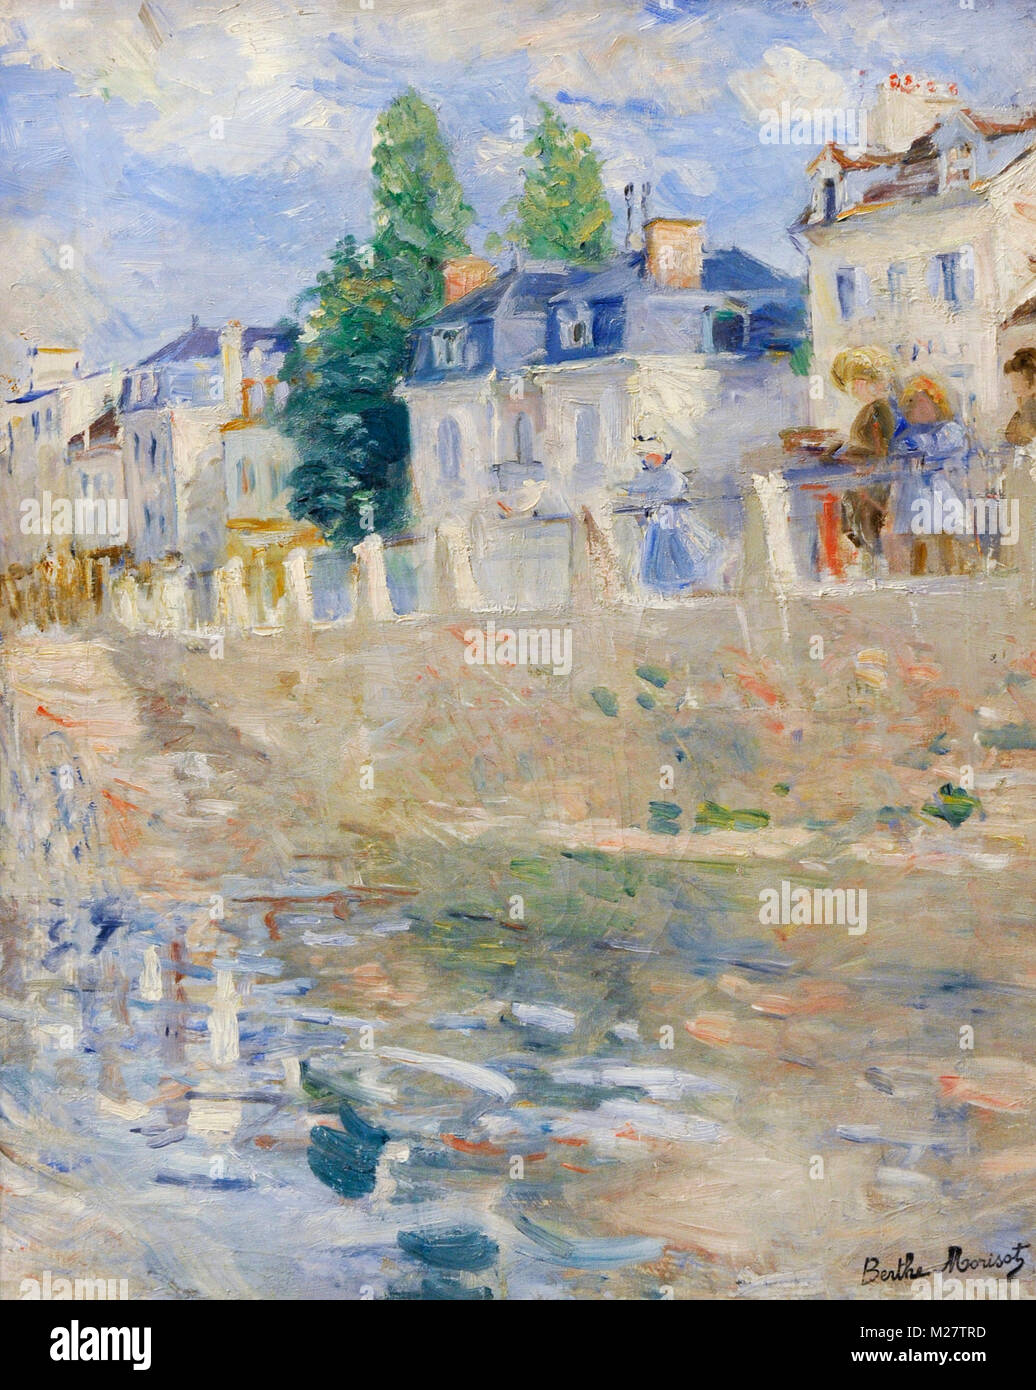 Berthe Morisot (1841-1895). Le peintre français. Le quai de Bougival, 1883. Galerie nationale. Oslo. La Norvège. Banque D'Images